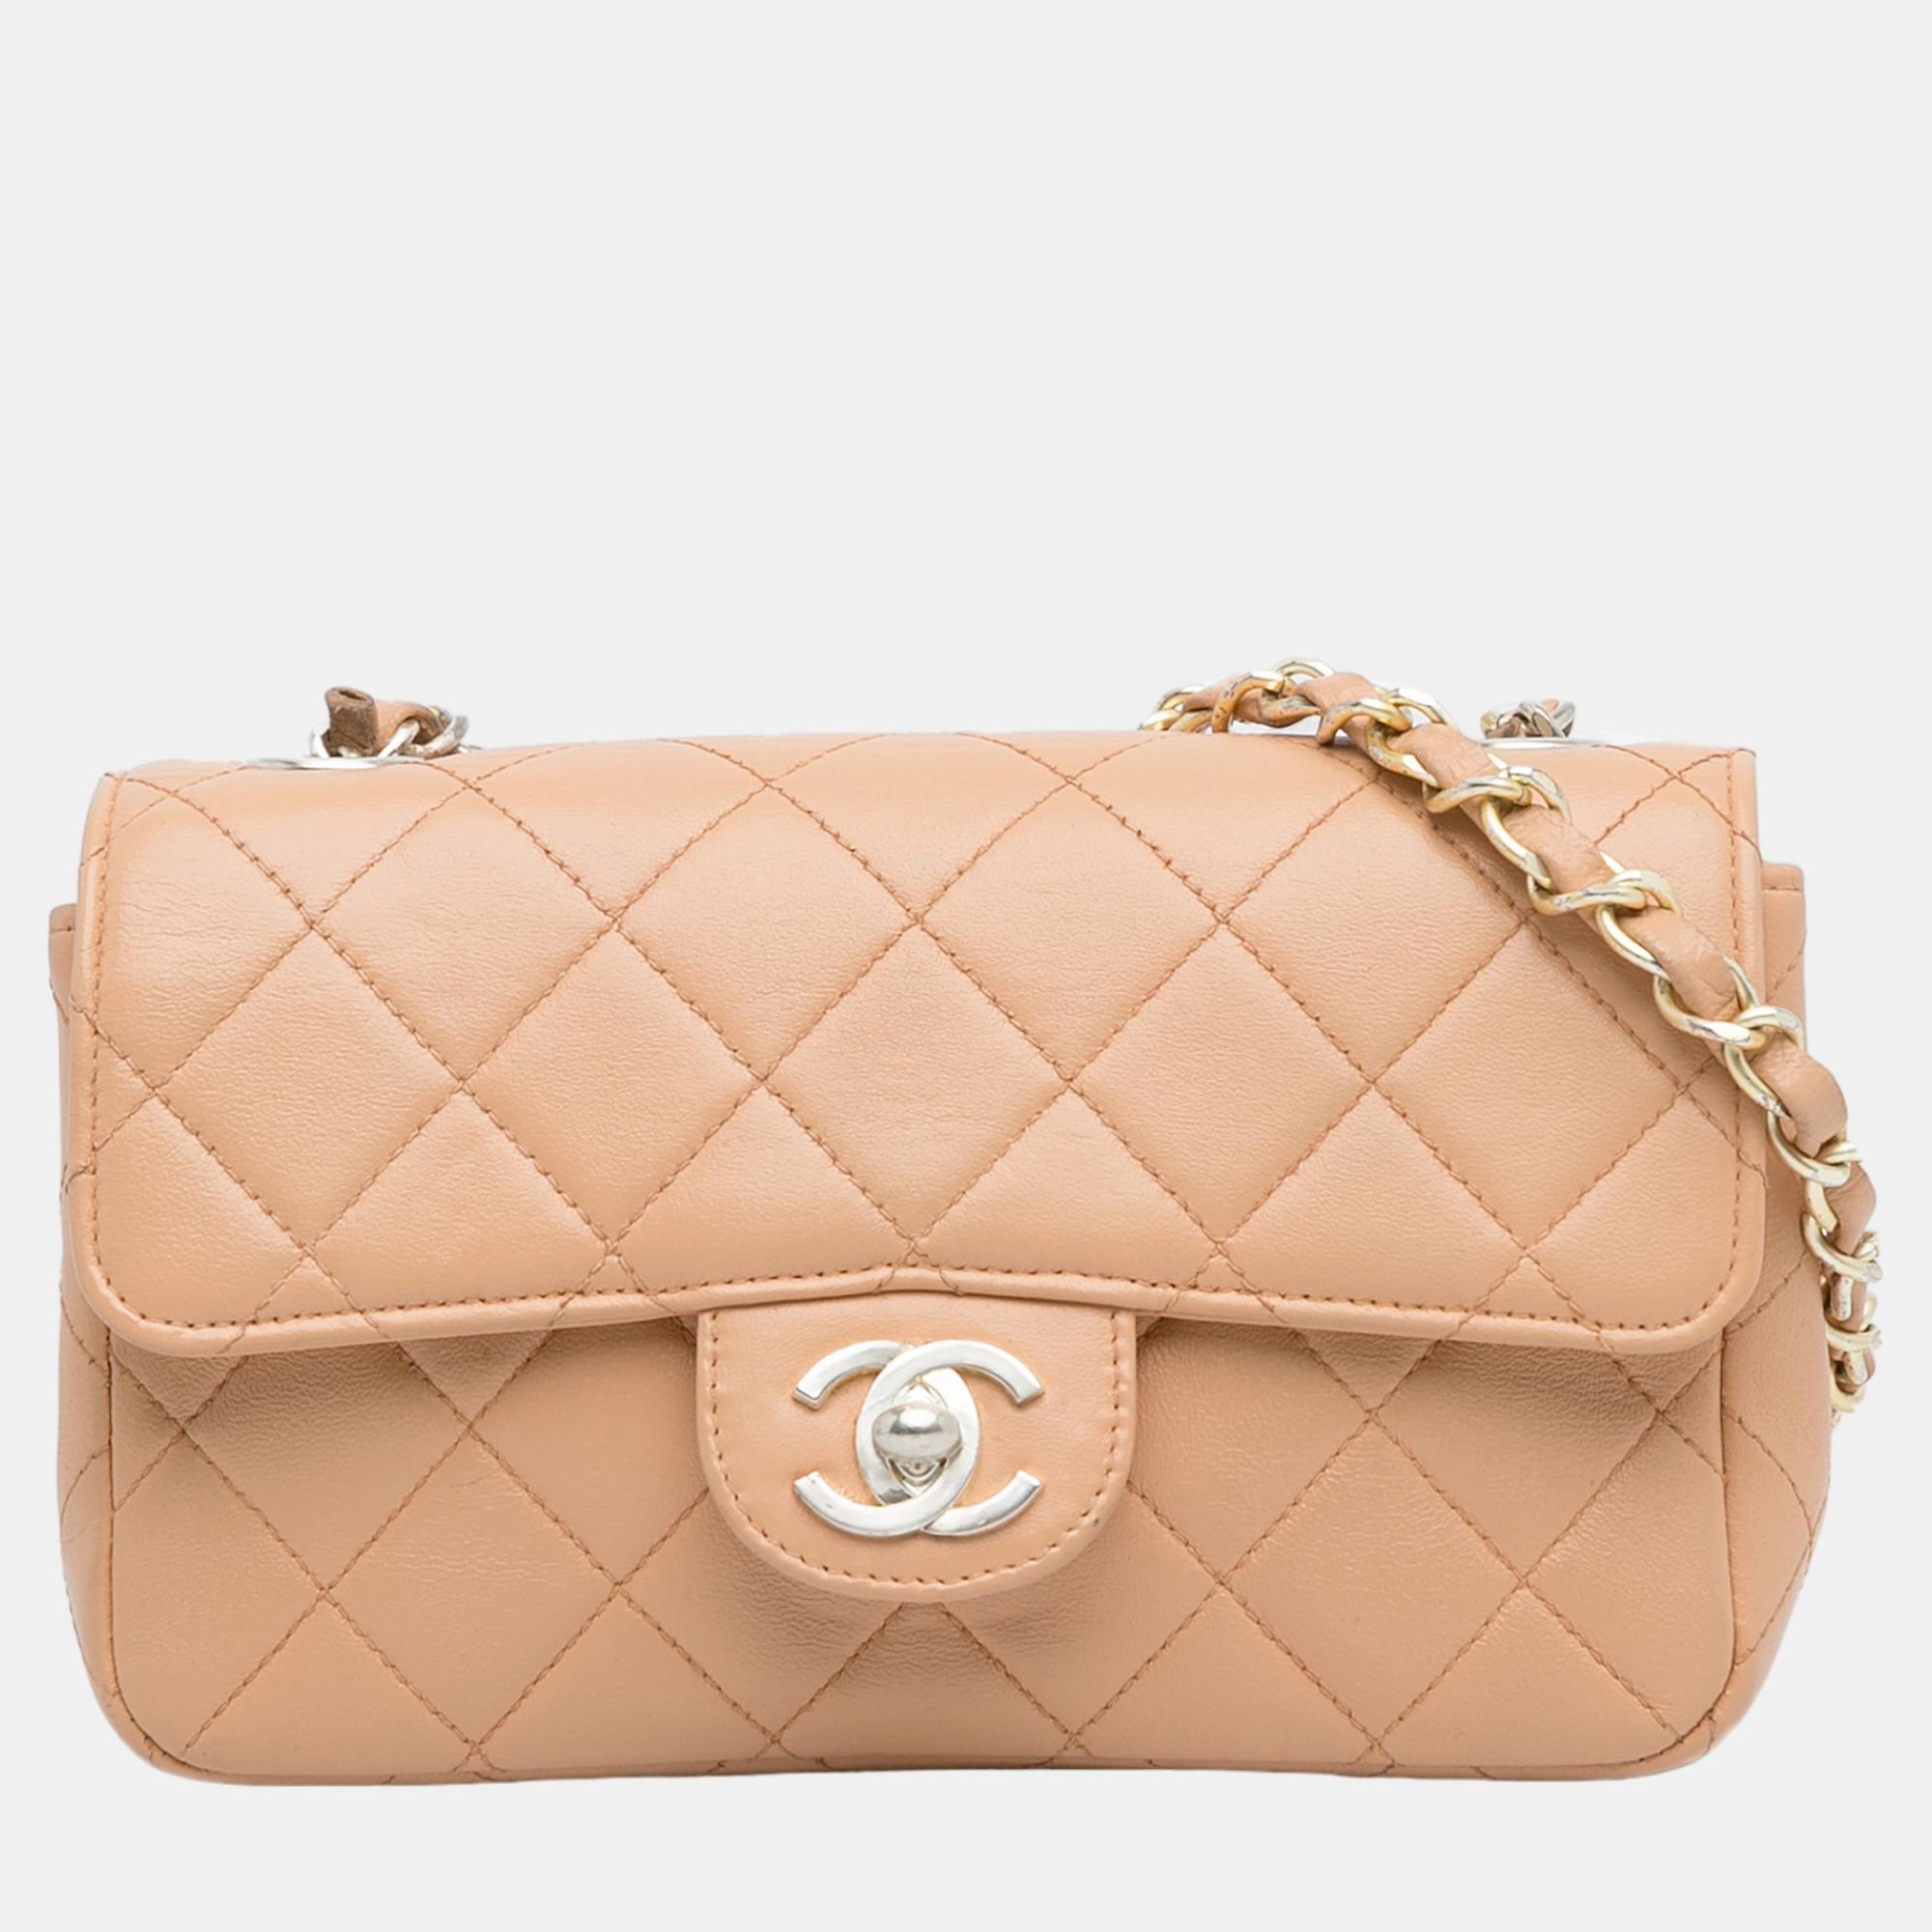 Chanel beige mini classic rectangular flap bag